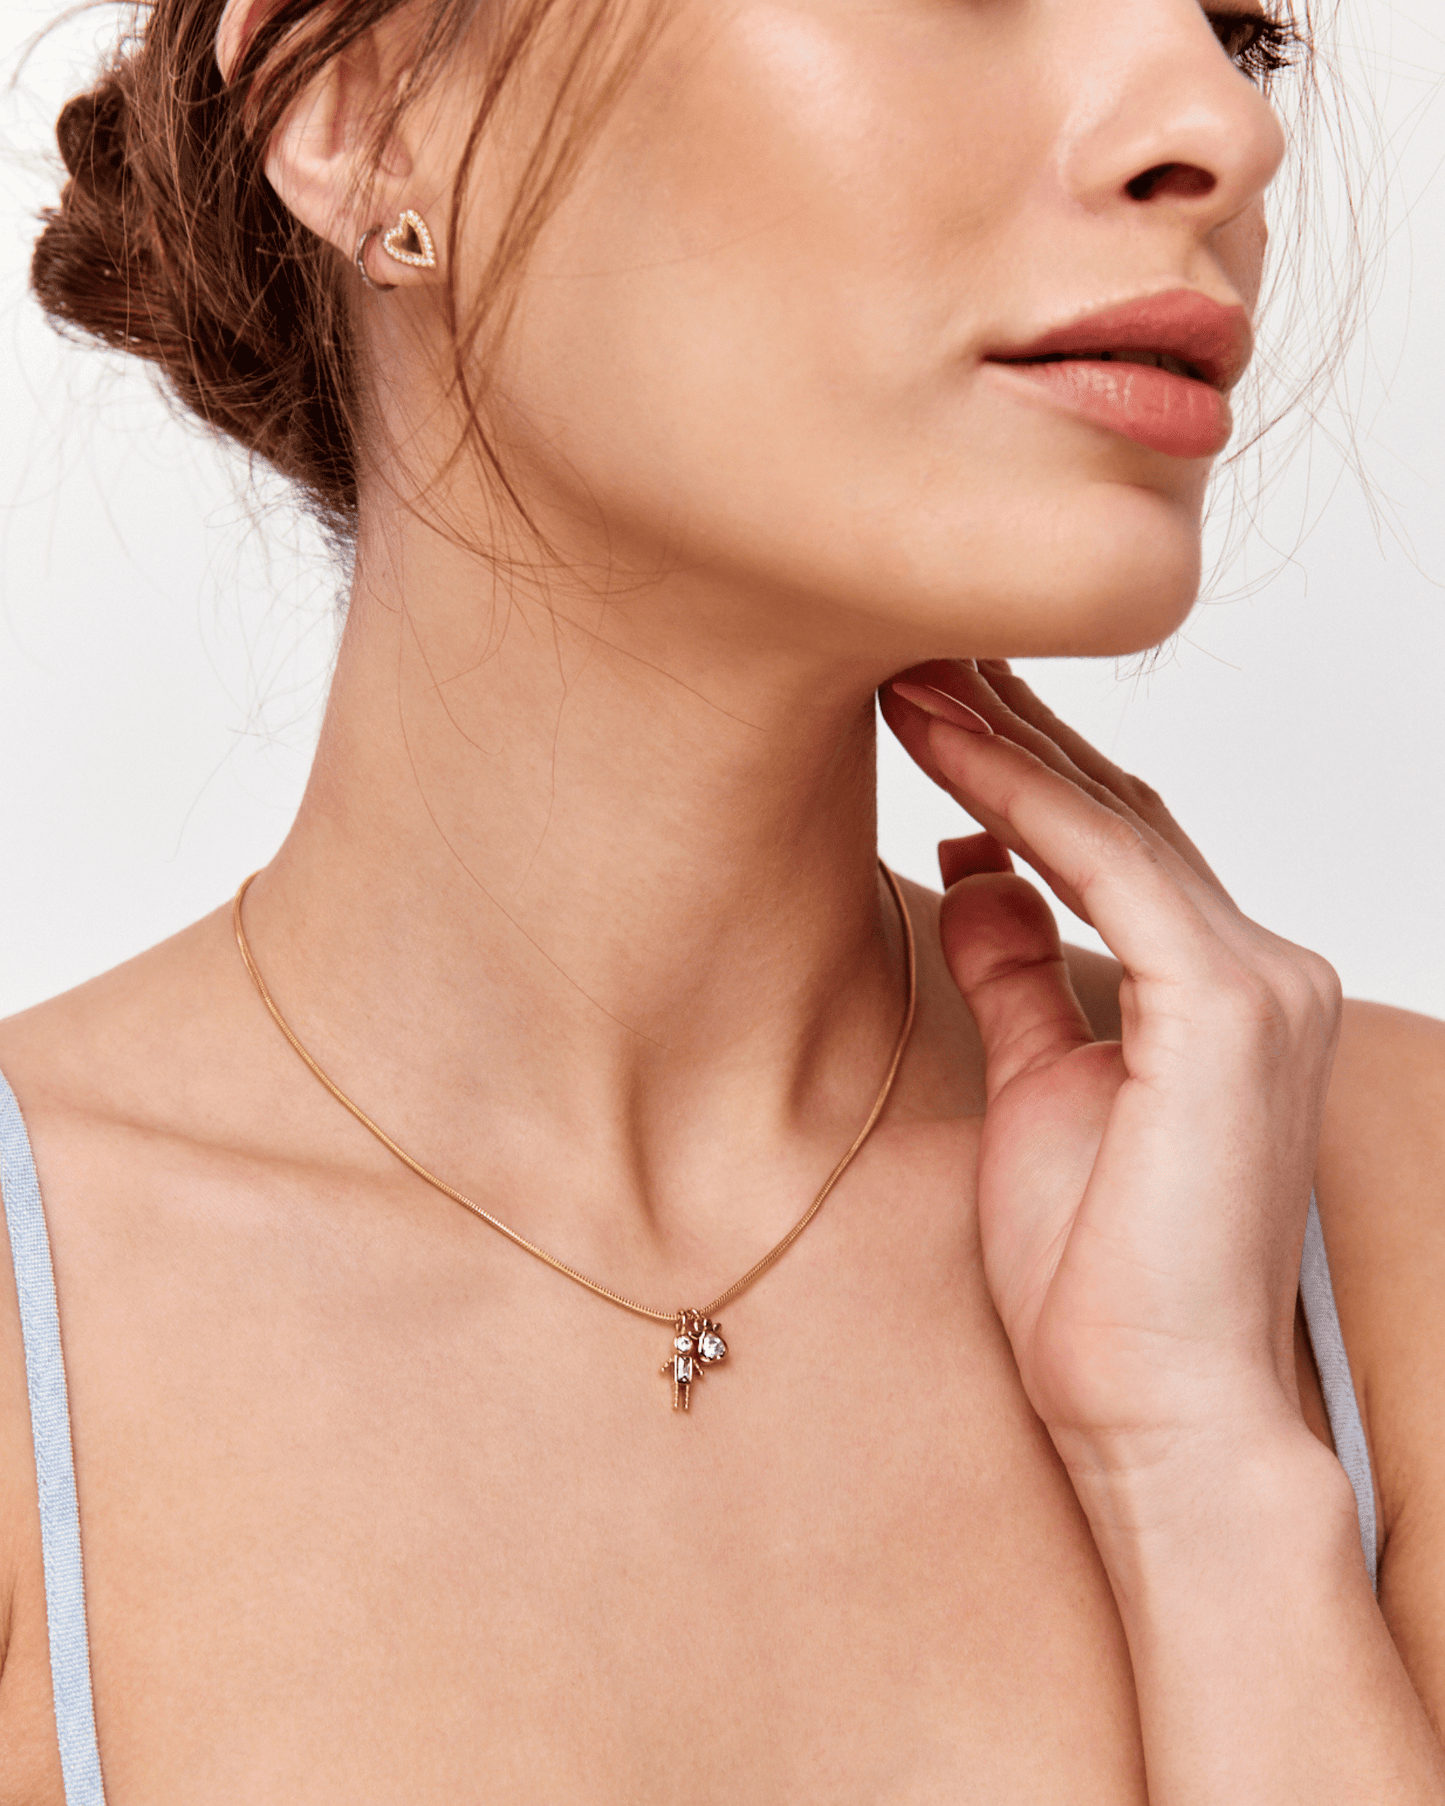 Single Mini Me Necklace - 18K Rose Vermeil Necklaces magal-dev 